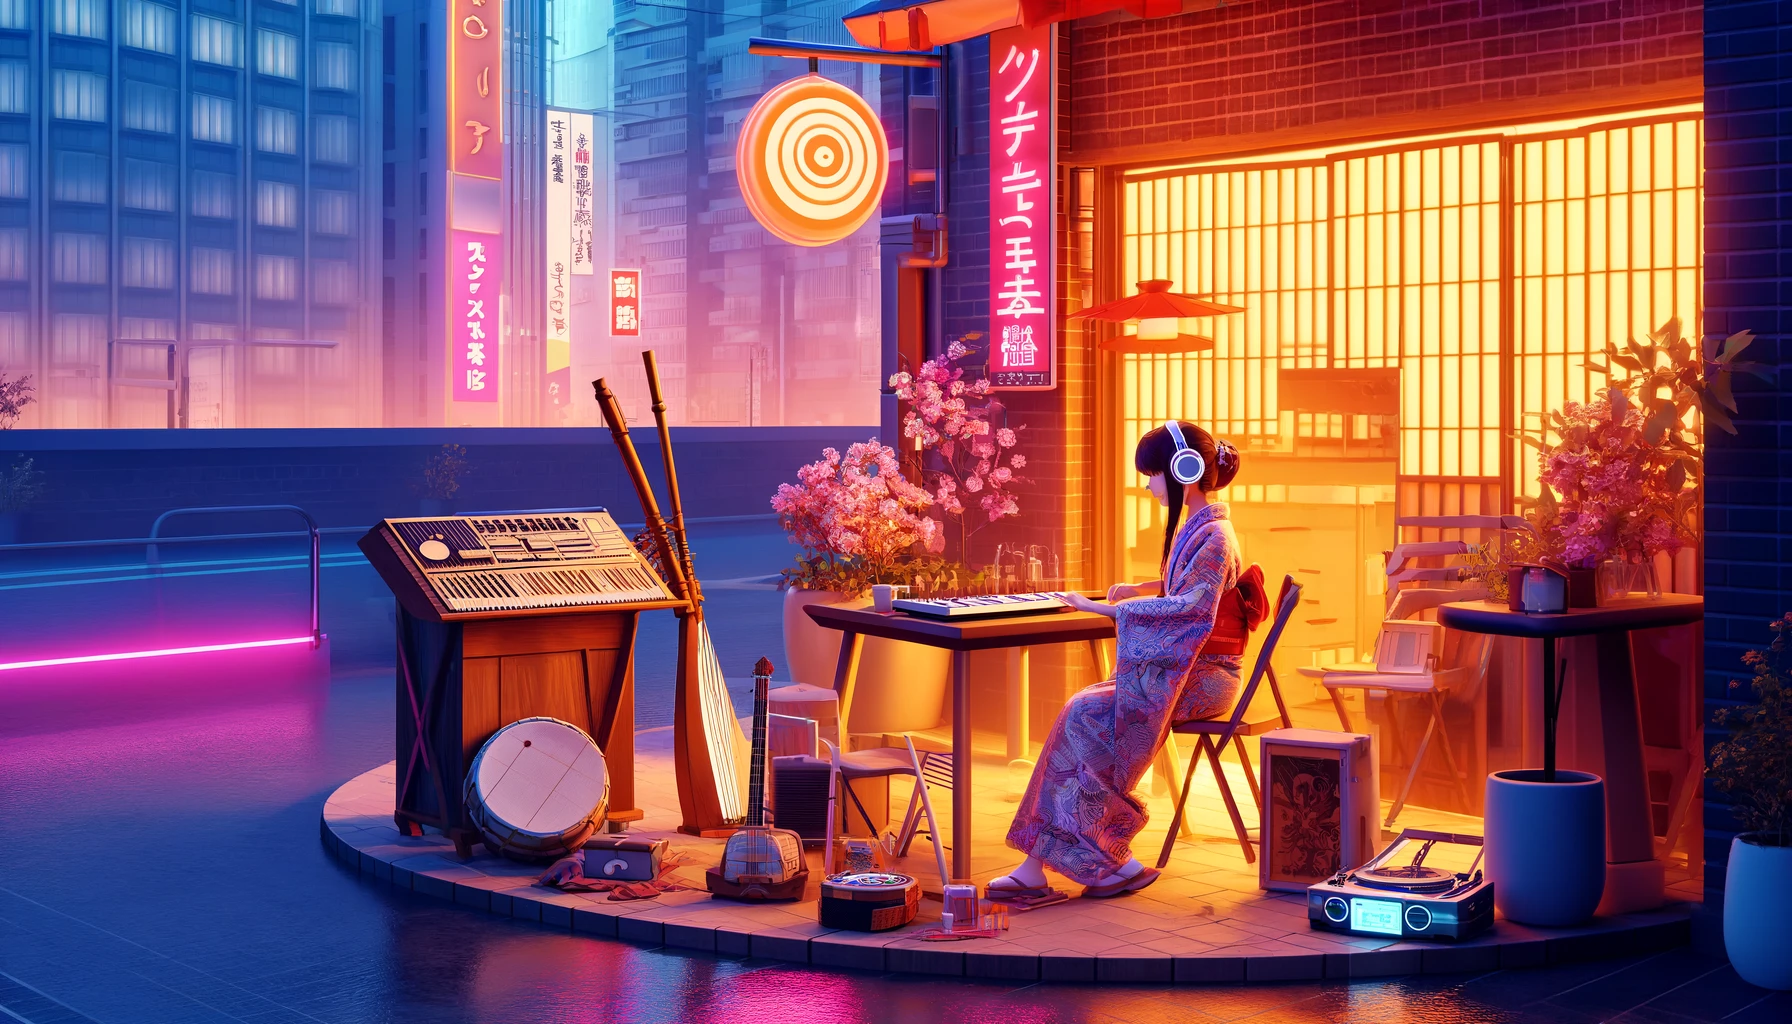 日本のアニメ風に描かれた東京のカフェコーナー。夕暮れ時、和服を着た若いアーティストがヘッドホンで音楽を楽しんでいます。近くには三味線と尺八があり、モダンなサンプラーとターンテーブルも見えます。背景にはネオンライトが反射する都市の景色が広がっています。